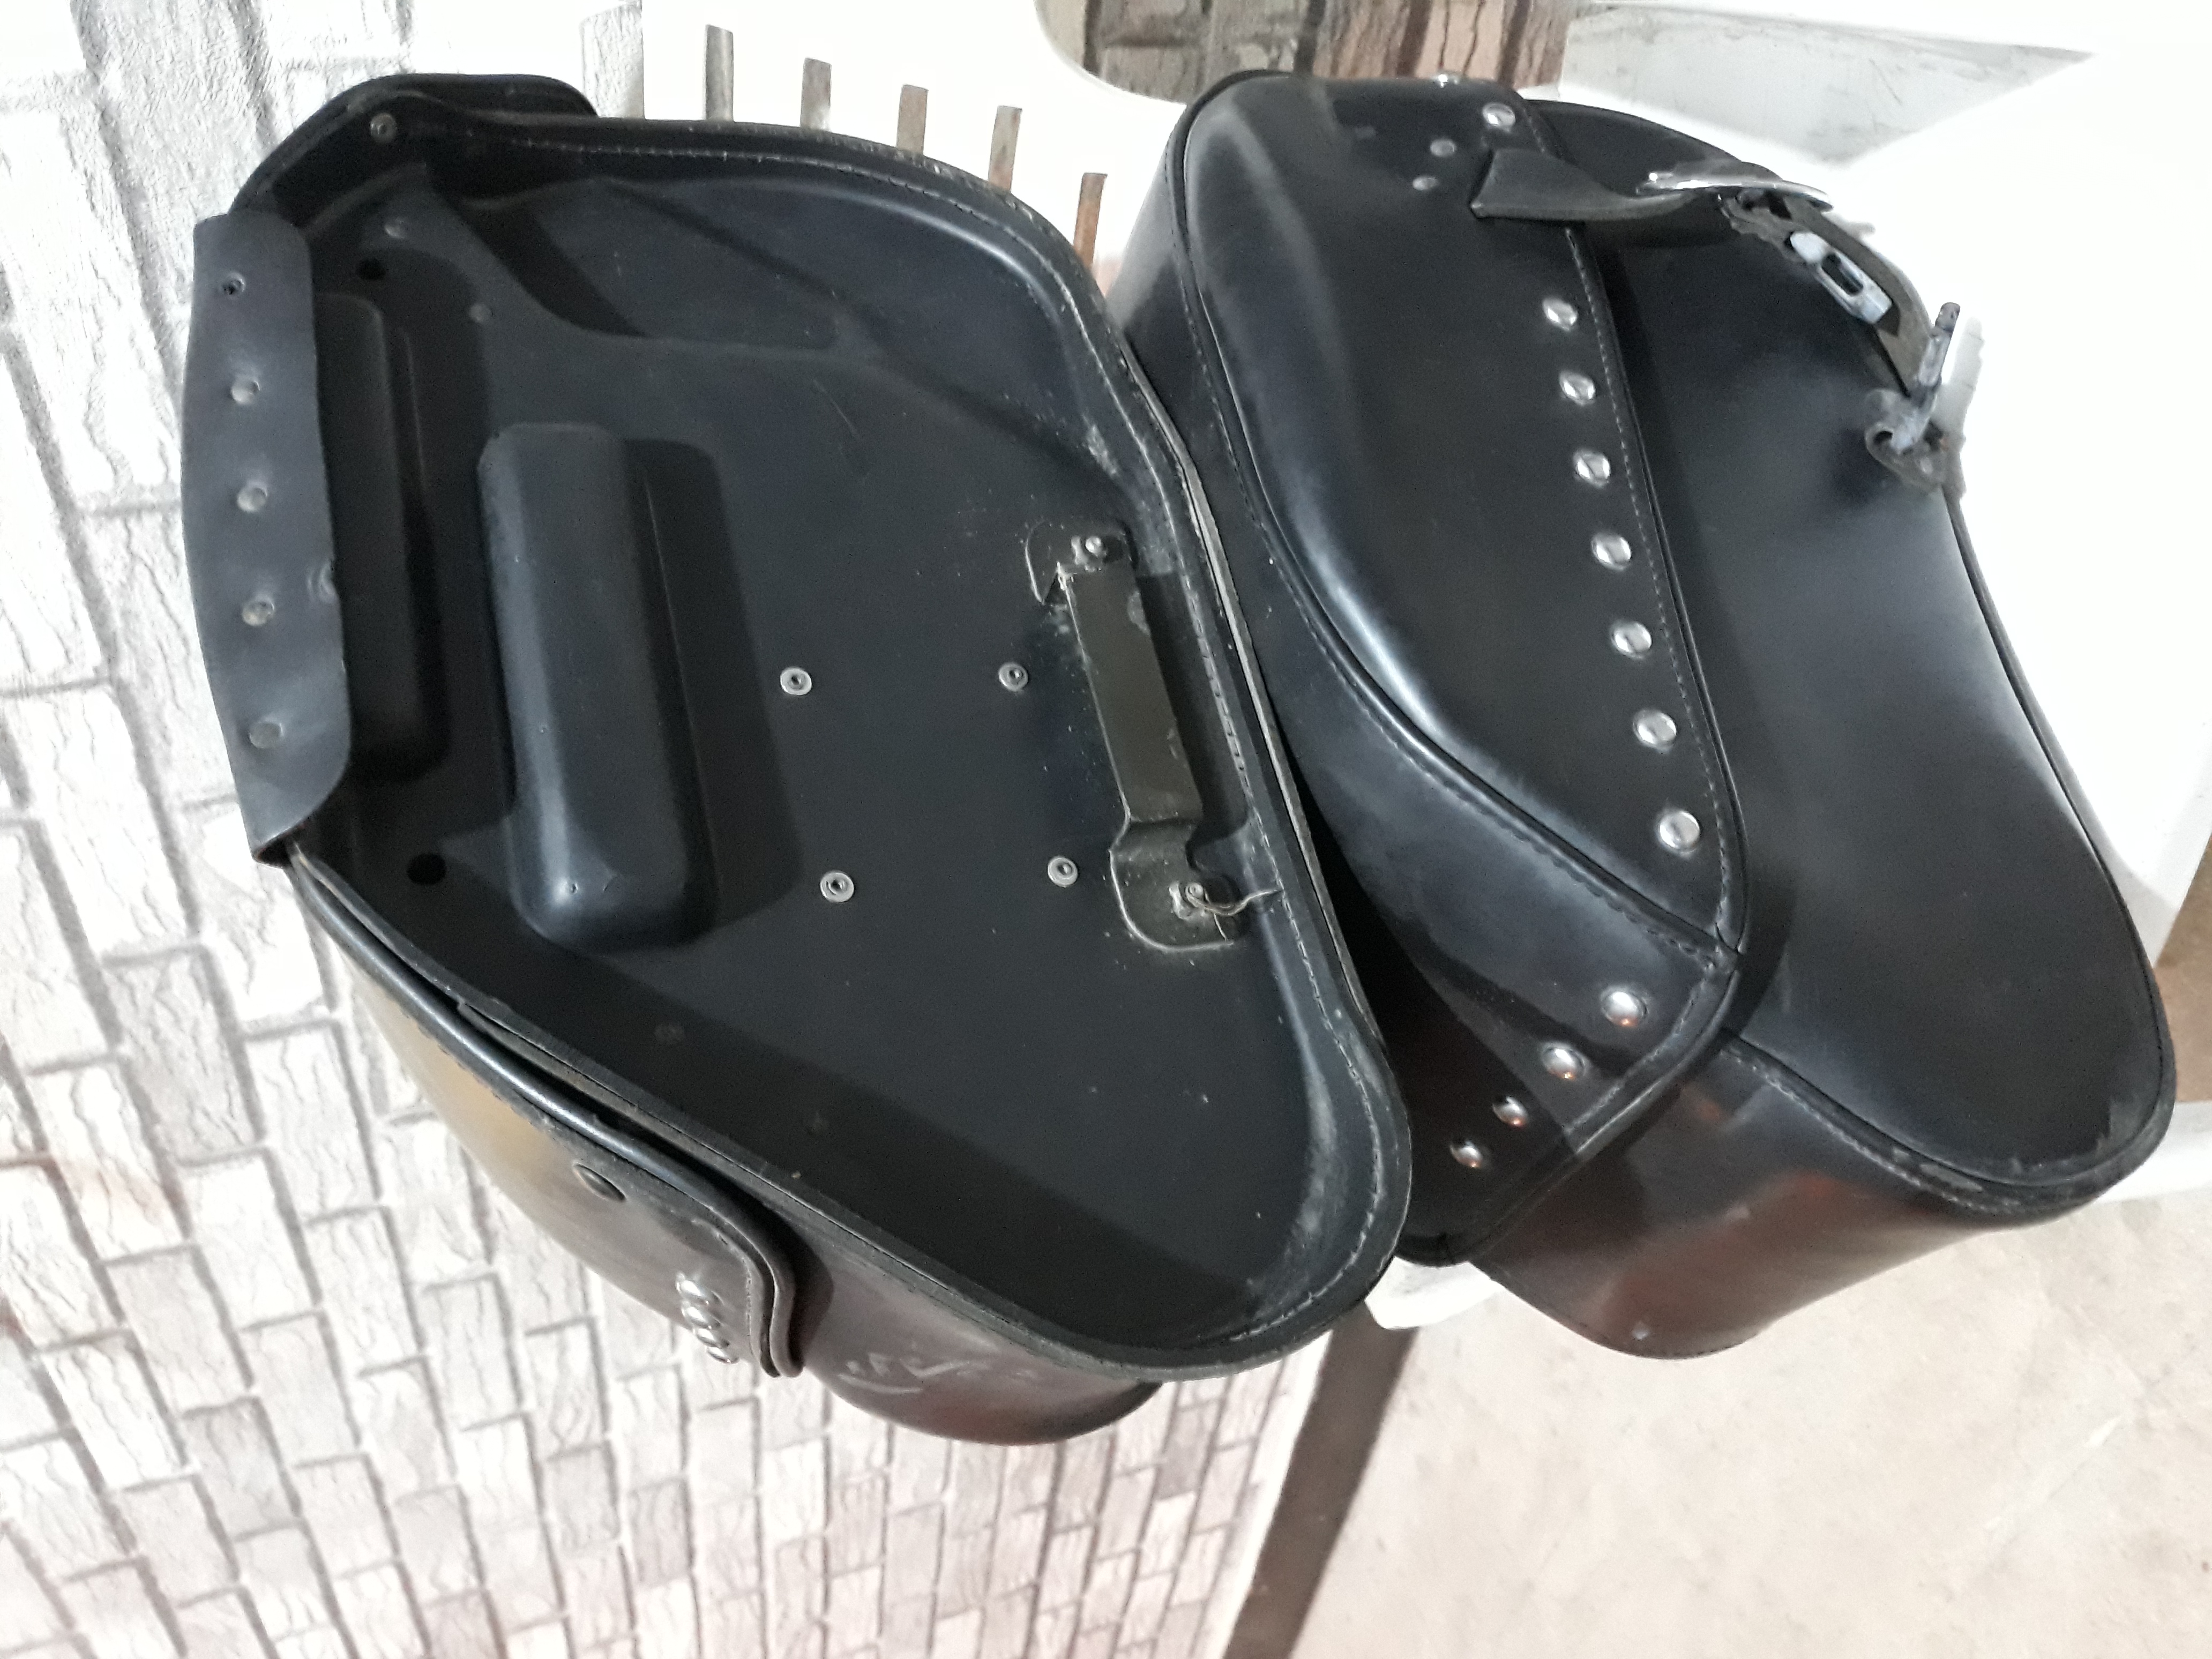 HONDA - Shadow aero  -  Luggage System - Side bags